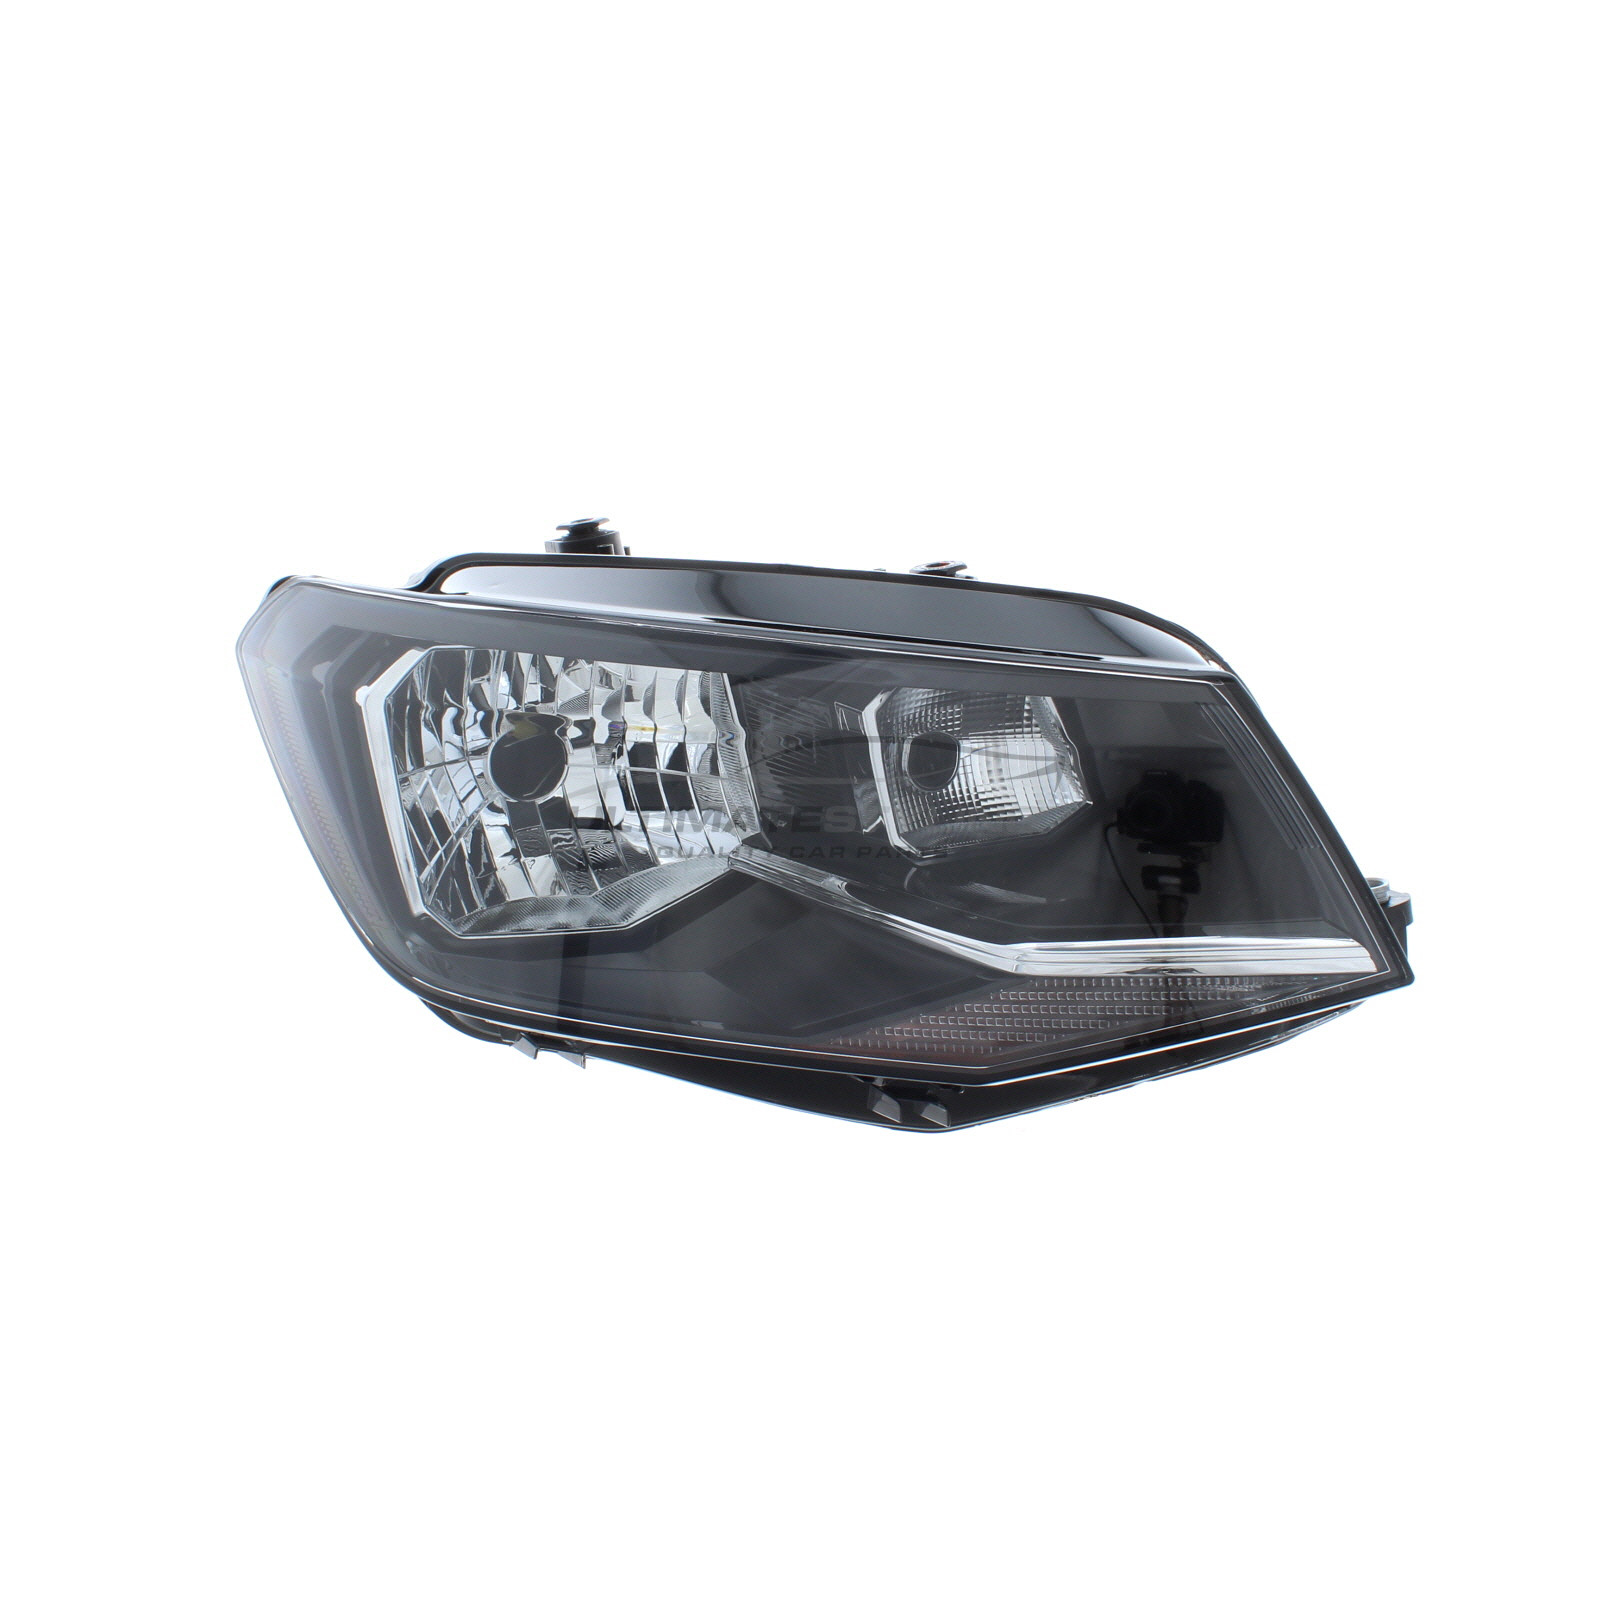 Headlight / Headlamp for VW Caddy